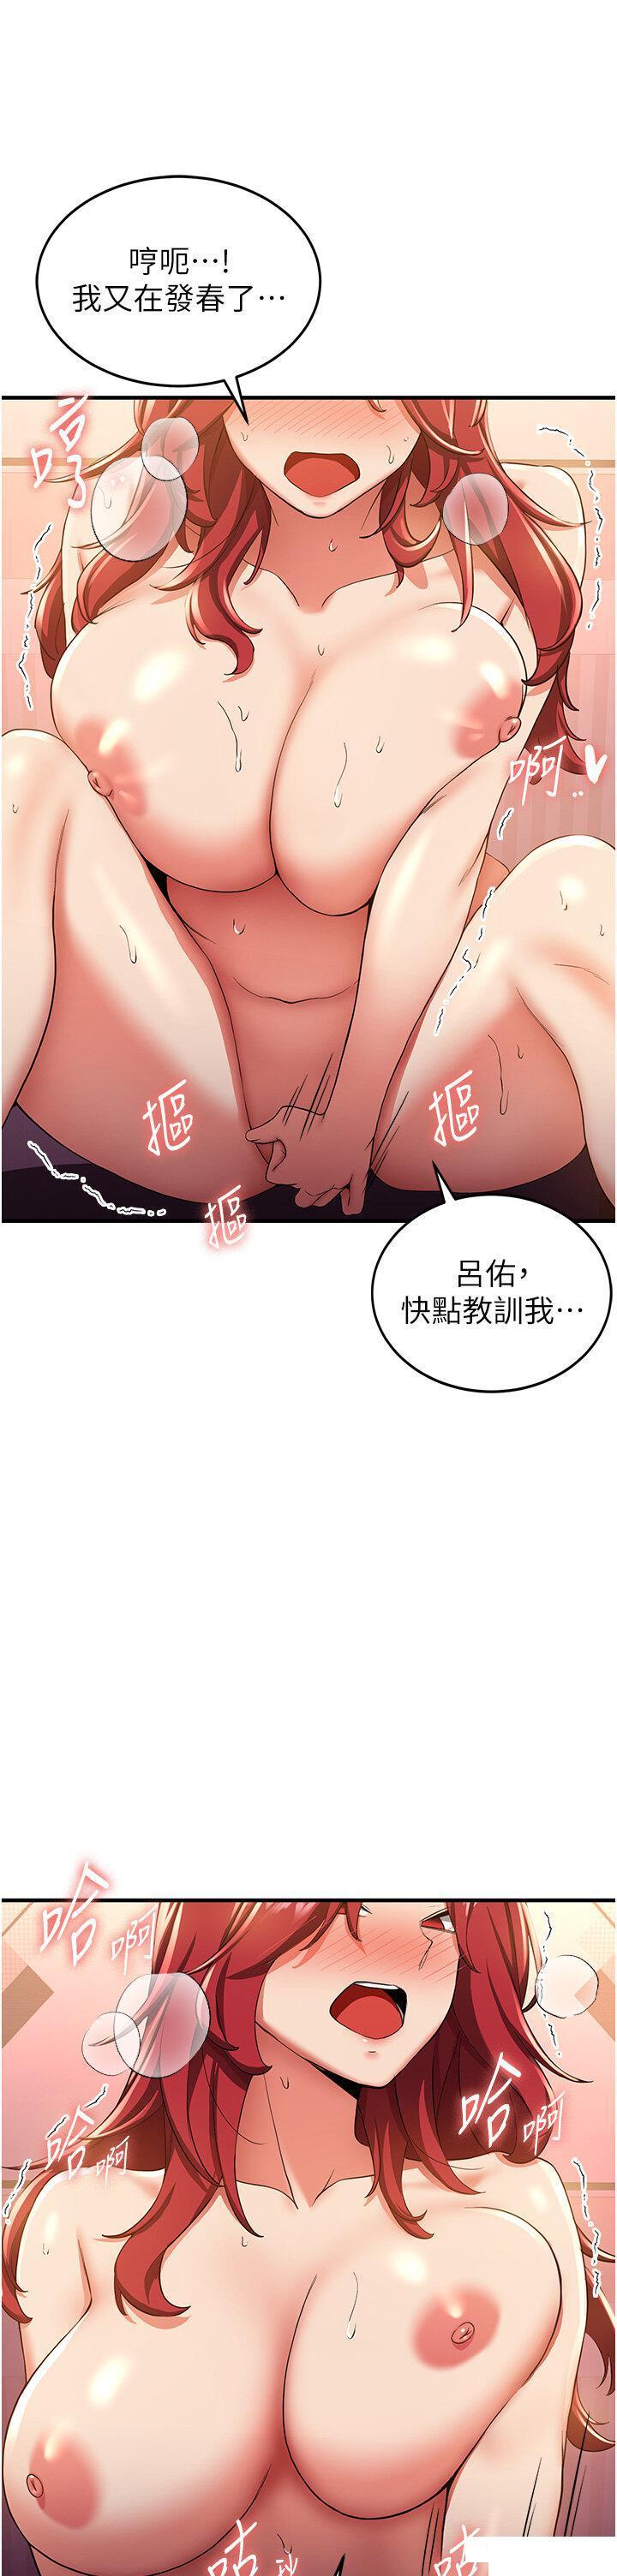 韩国污漫画 搶女友速成班 第15话 你竟敢去找别的女人? 21